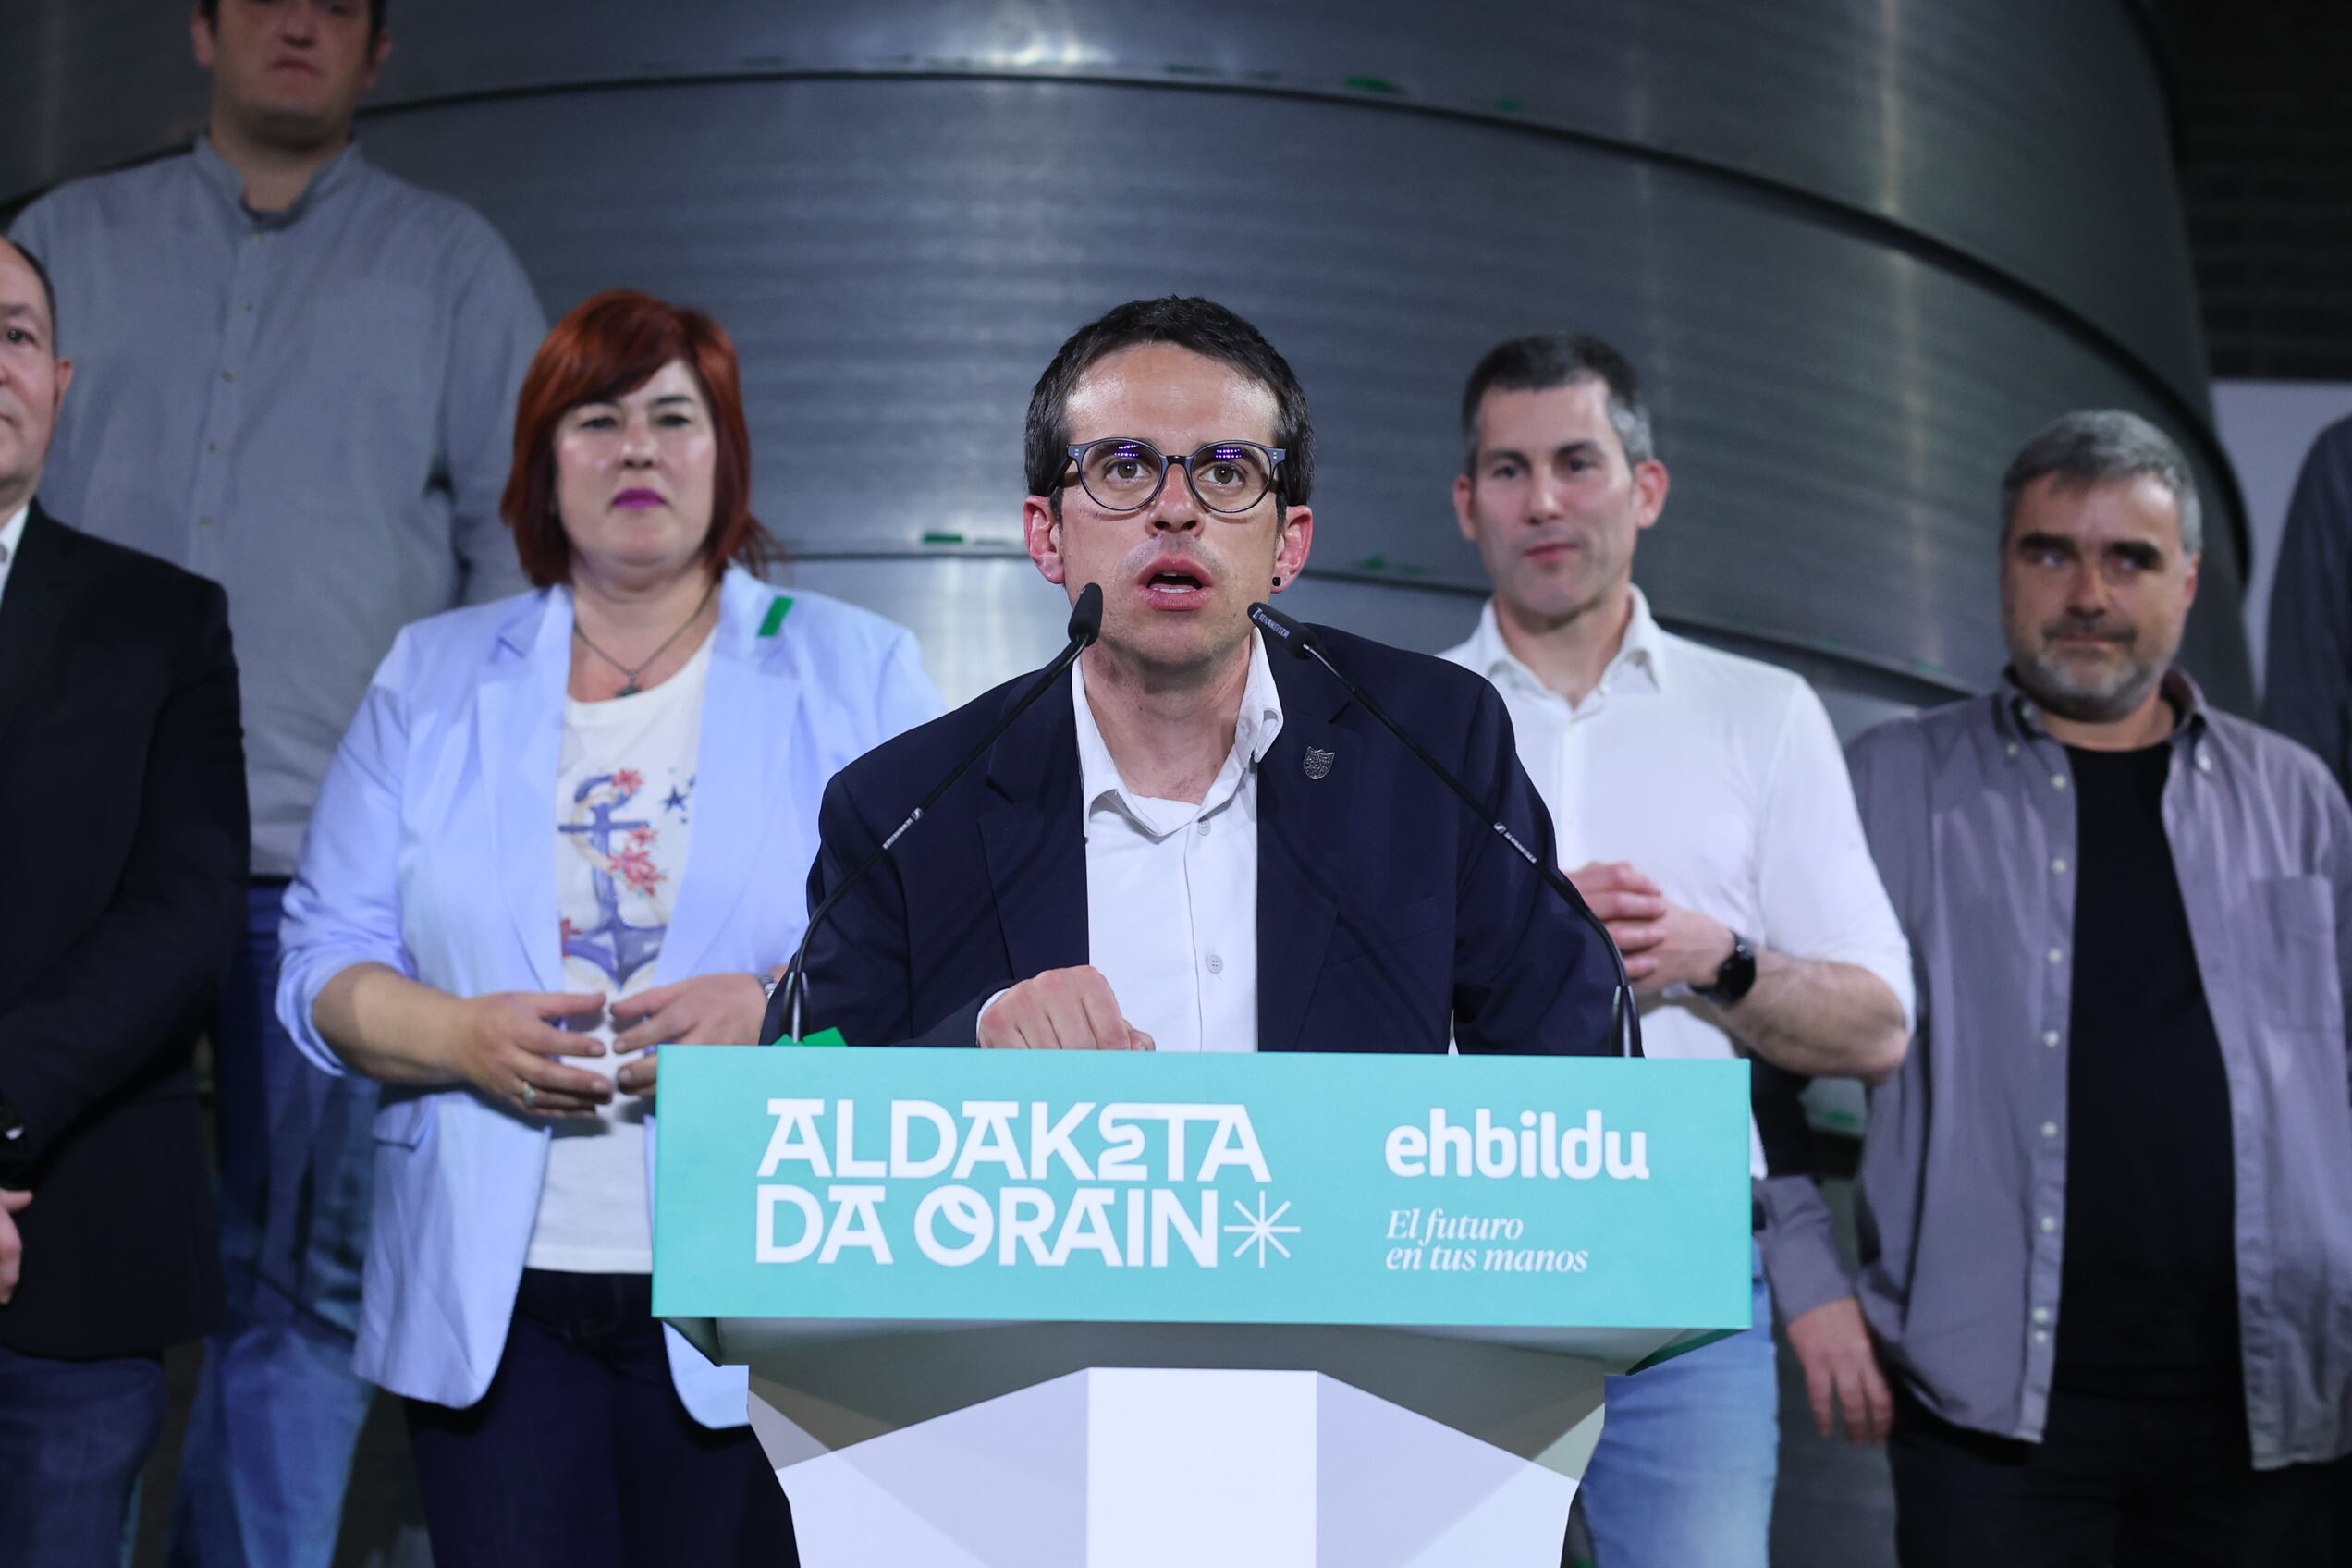 El candidato a lehendakari, Pello Otxandiano, comparece ante los medios durante el seguimiento de la jornada electoral de elecciones autonómicas del País Vasco, este domingo.